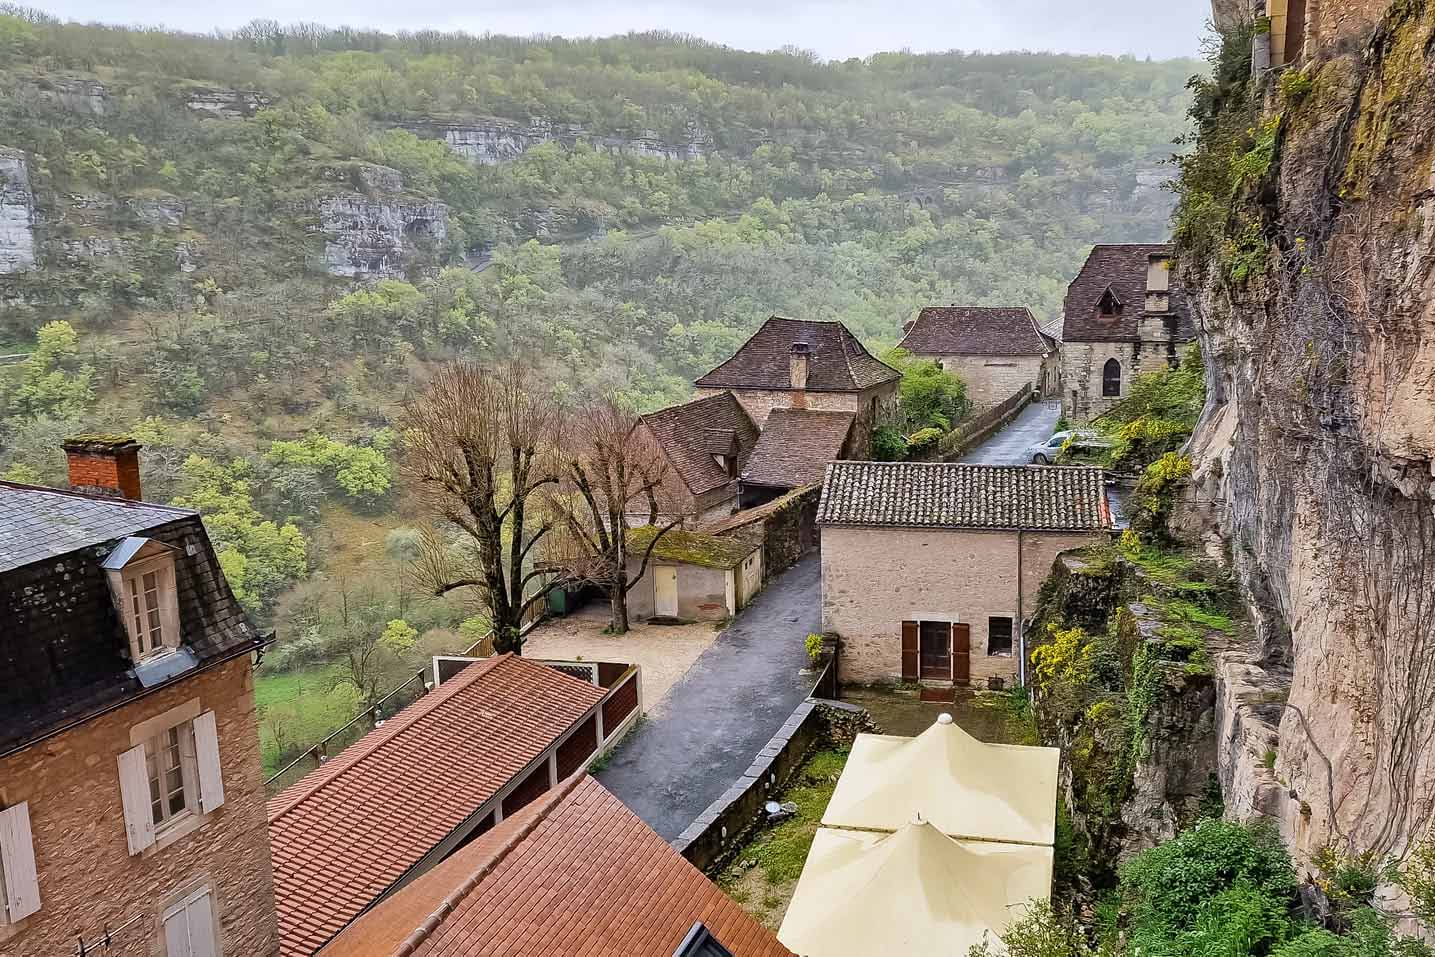 Kỳ vĩ ngôi làng cheo leo trên vách núi Pháp - Ảnh 6.